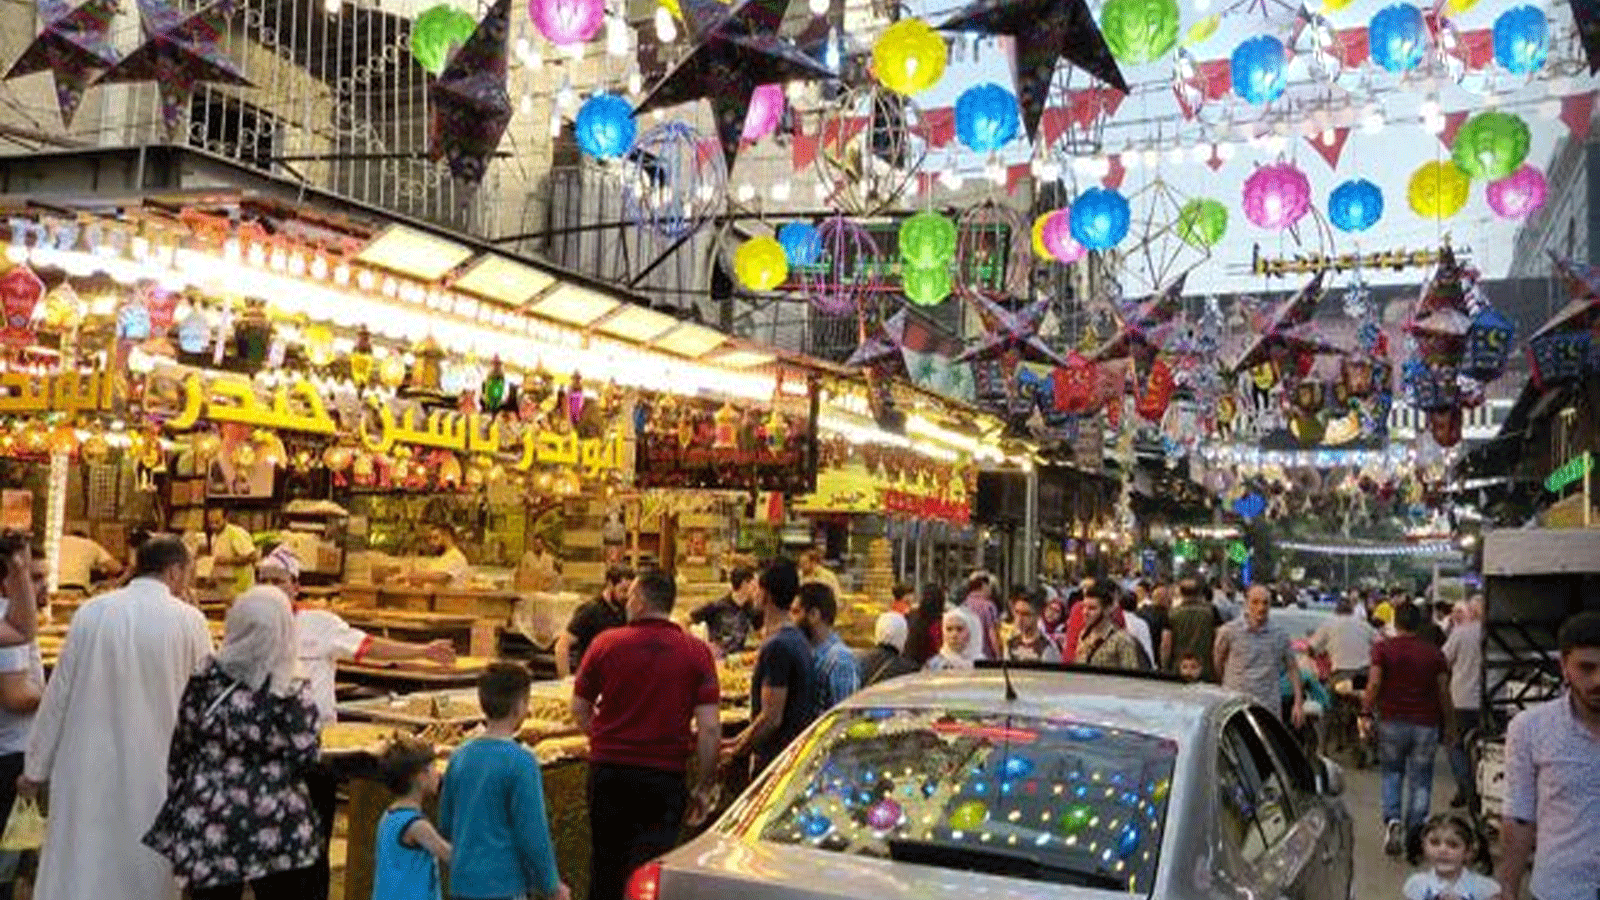 حي الميدان الدمشقي القديم يتميّز بجذوره العميقة وتقاليده الاجتماعية، فضلاً عن كونه سوقًا اقتصاديًا معروفًا(سانا)